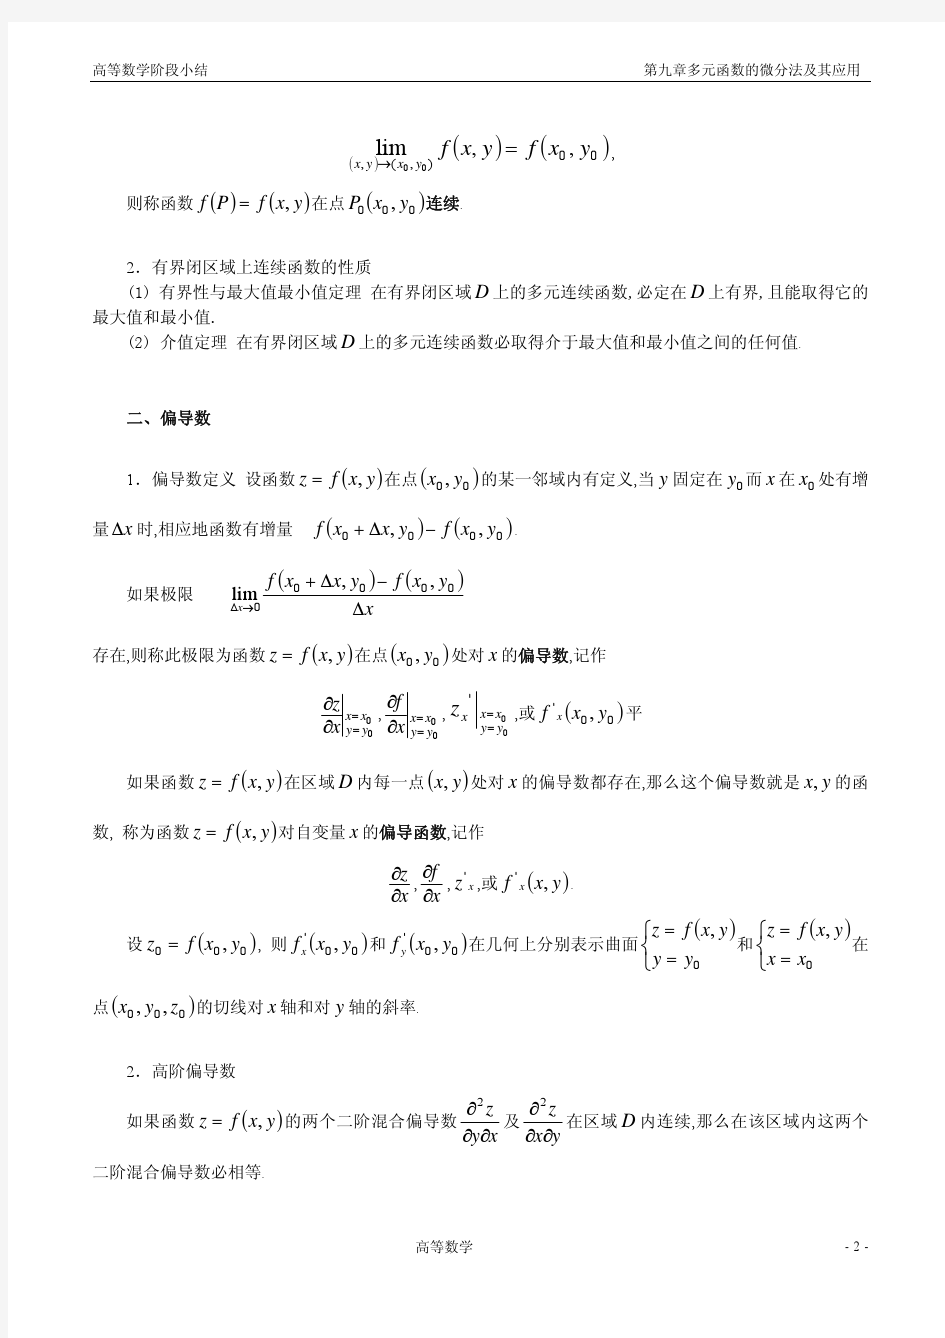 高等数学(同济大学第六版)第9章多元函数微分法小结